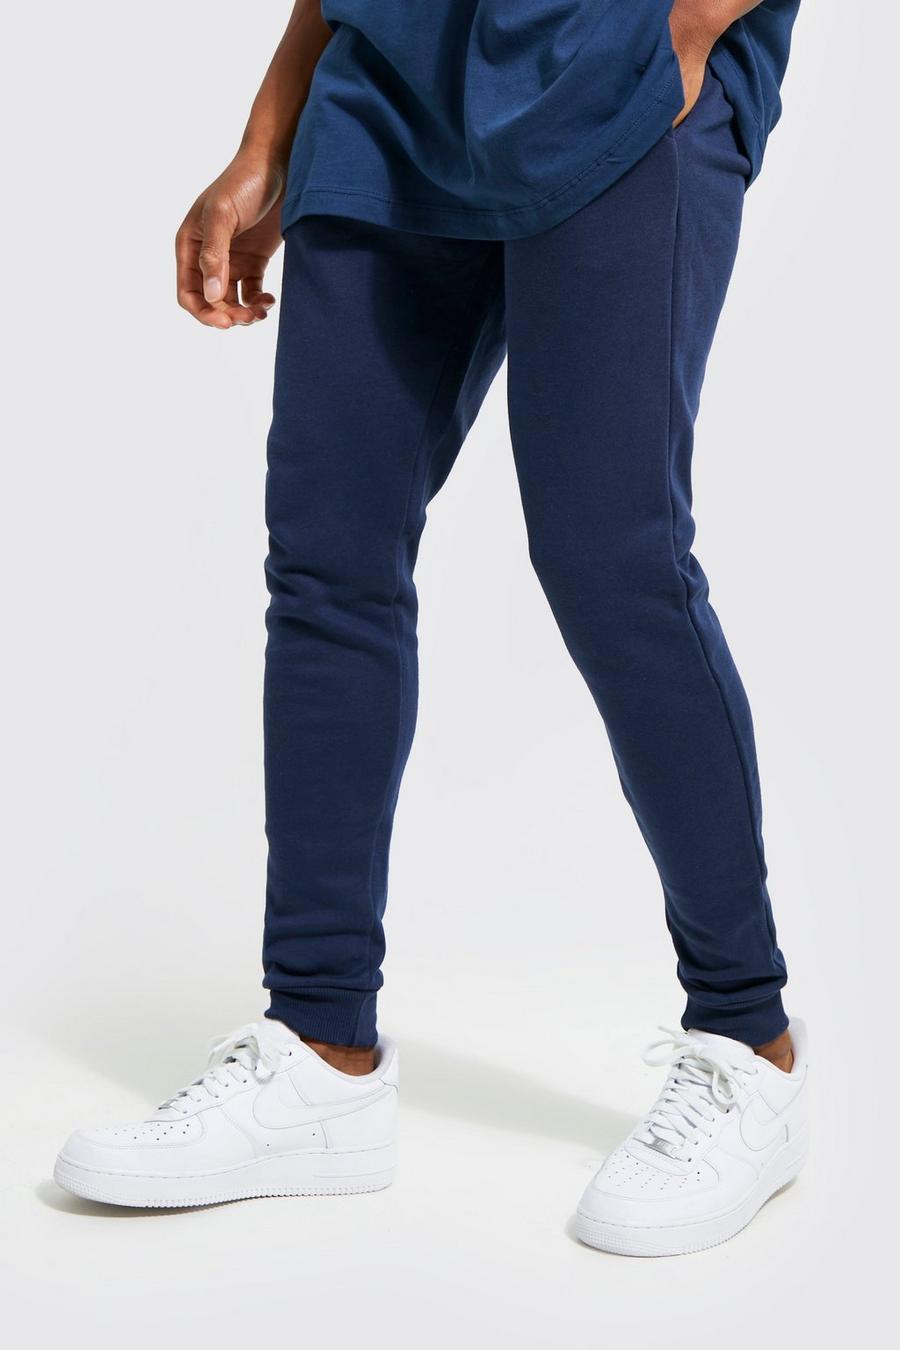 Pantaloni tuta Super Skinny Fit in cotone REEL, Navy blu oltremare